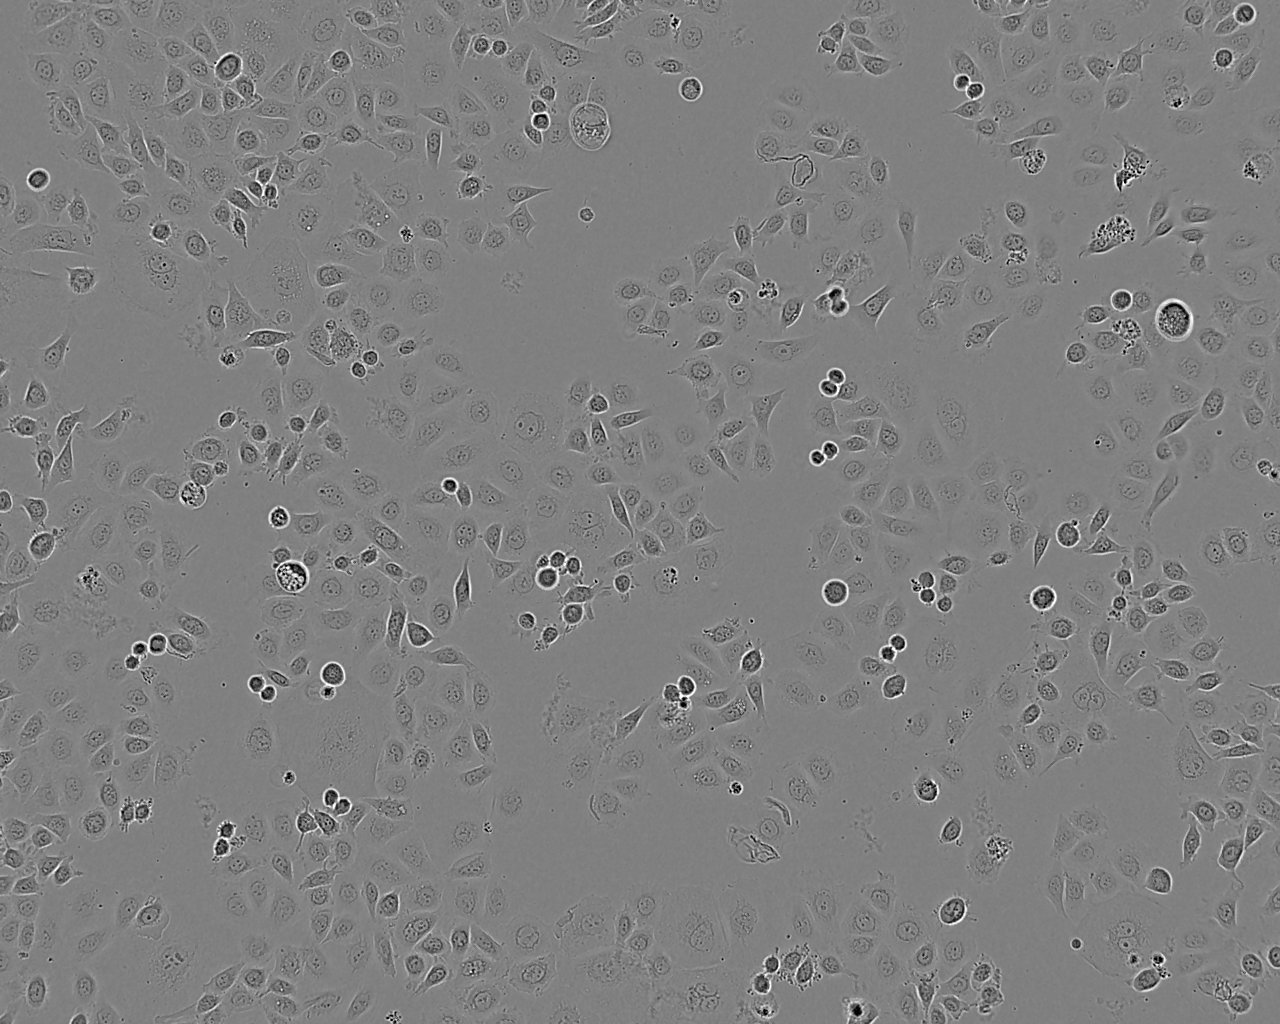 108CC15 Cell:小鼠神经母瘤与大鼠胶质瘤之融合细胞系